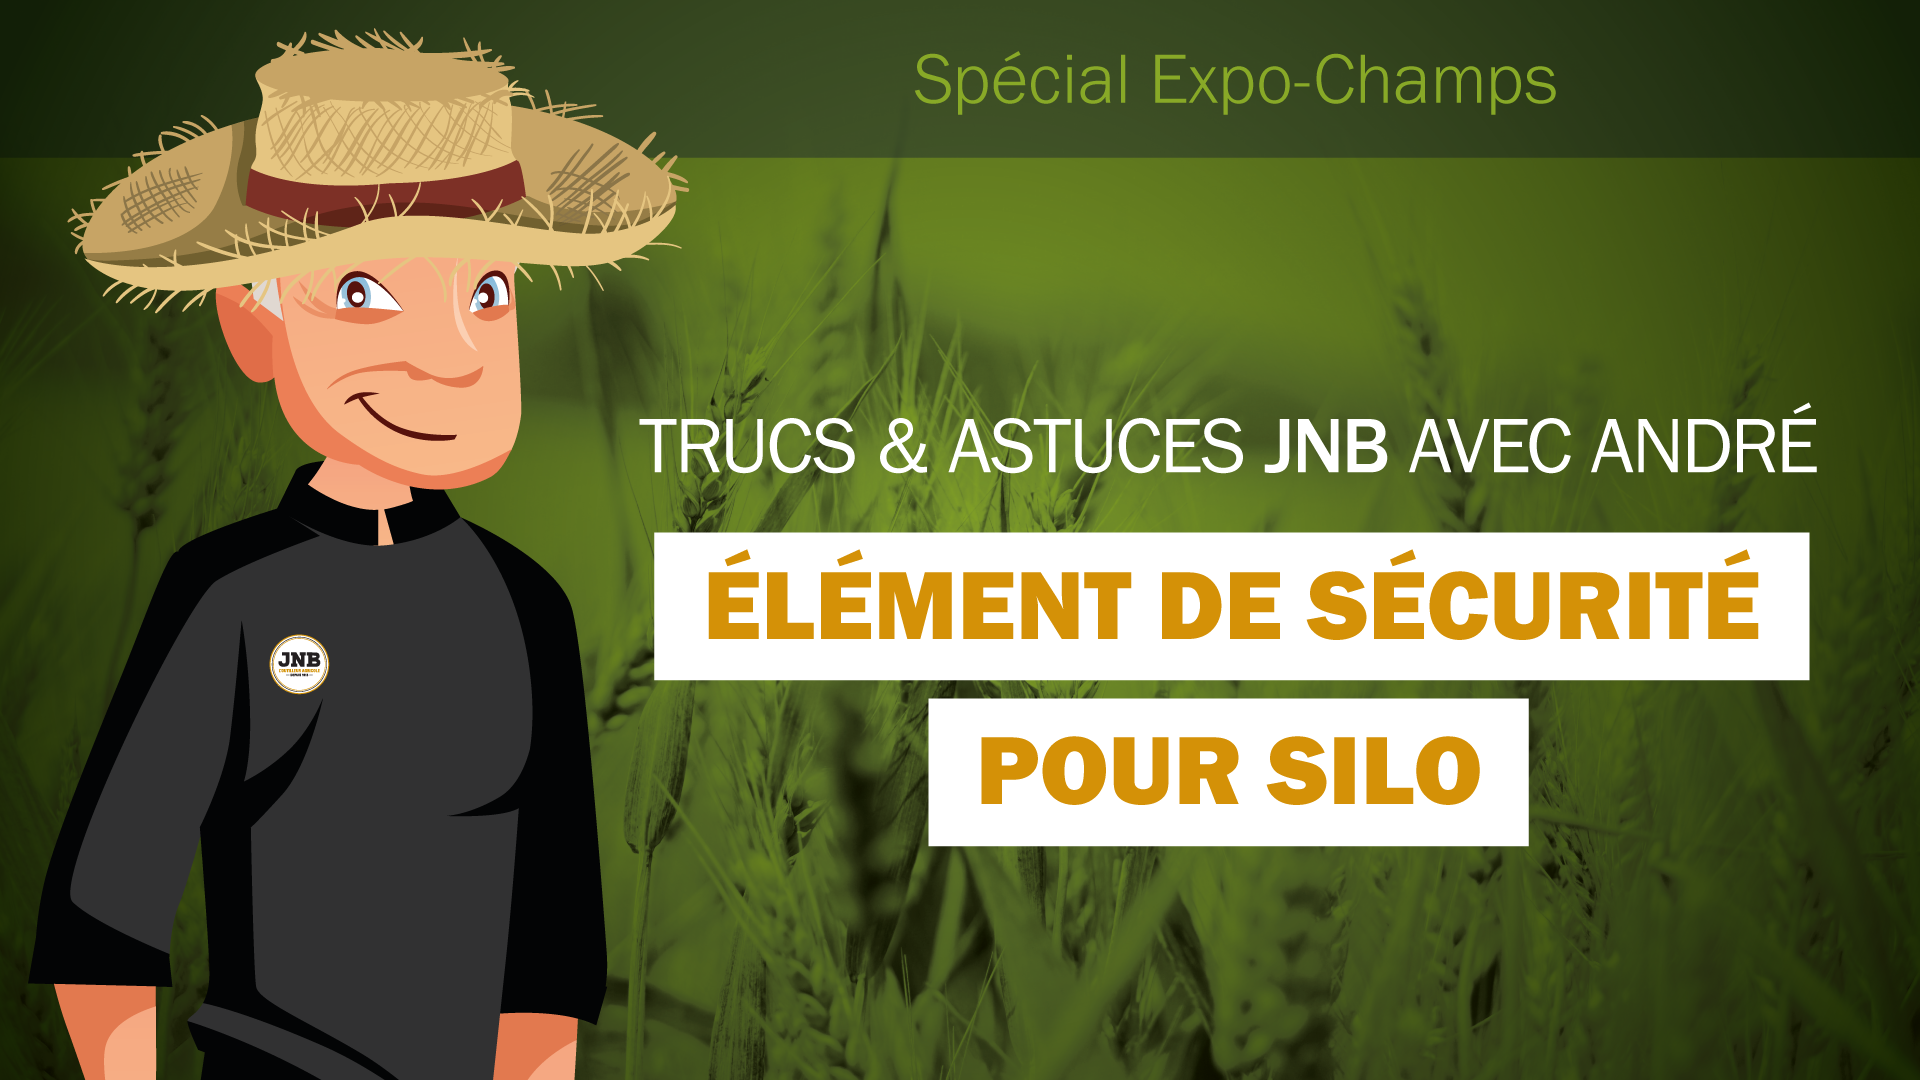 Spécial Expo-Champs - Élément de sécurité pour silo